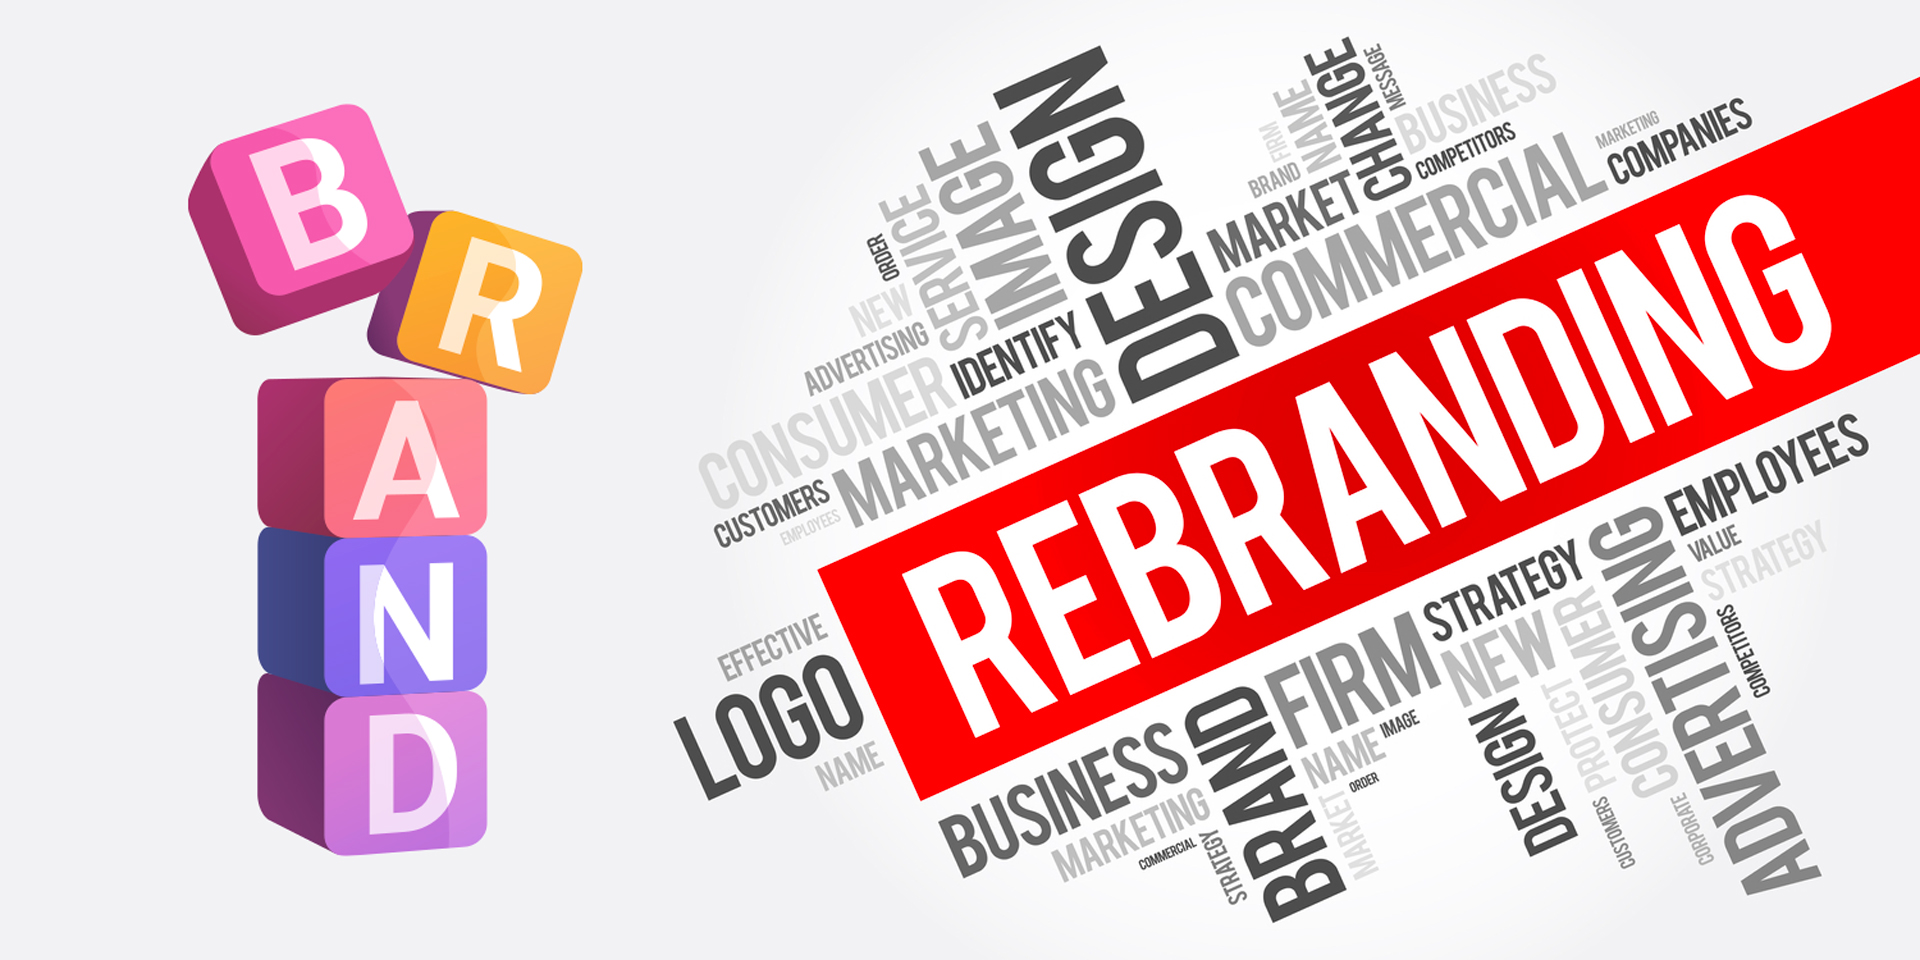 Brand Rebranding Strategy Explained